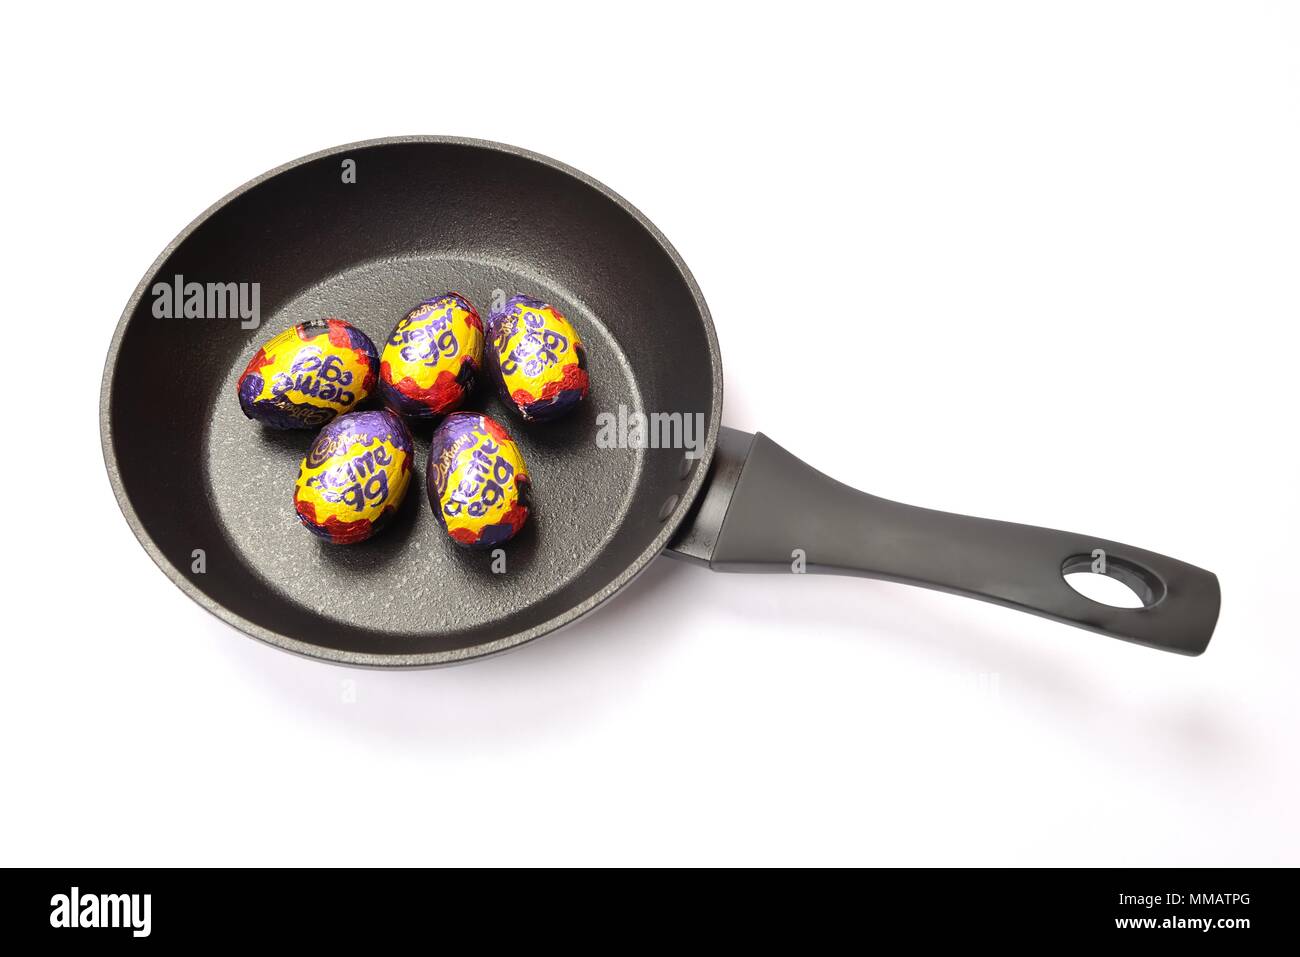 Concetto di immagine di cinque Cadbury's crema di uova in una padella su sfondo bianco. Foto Stock